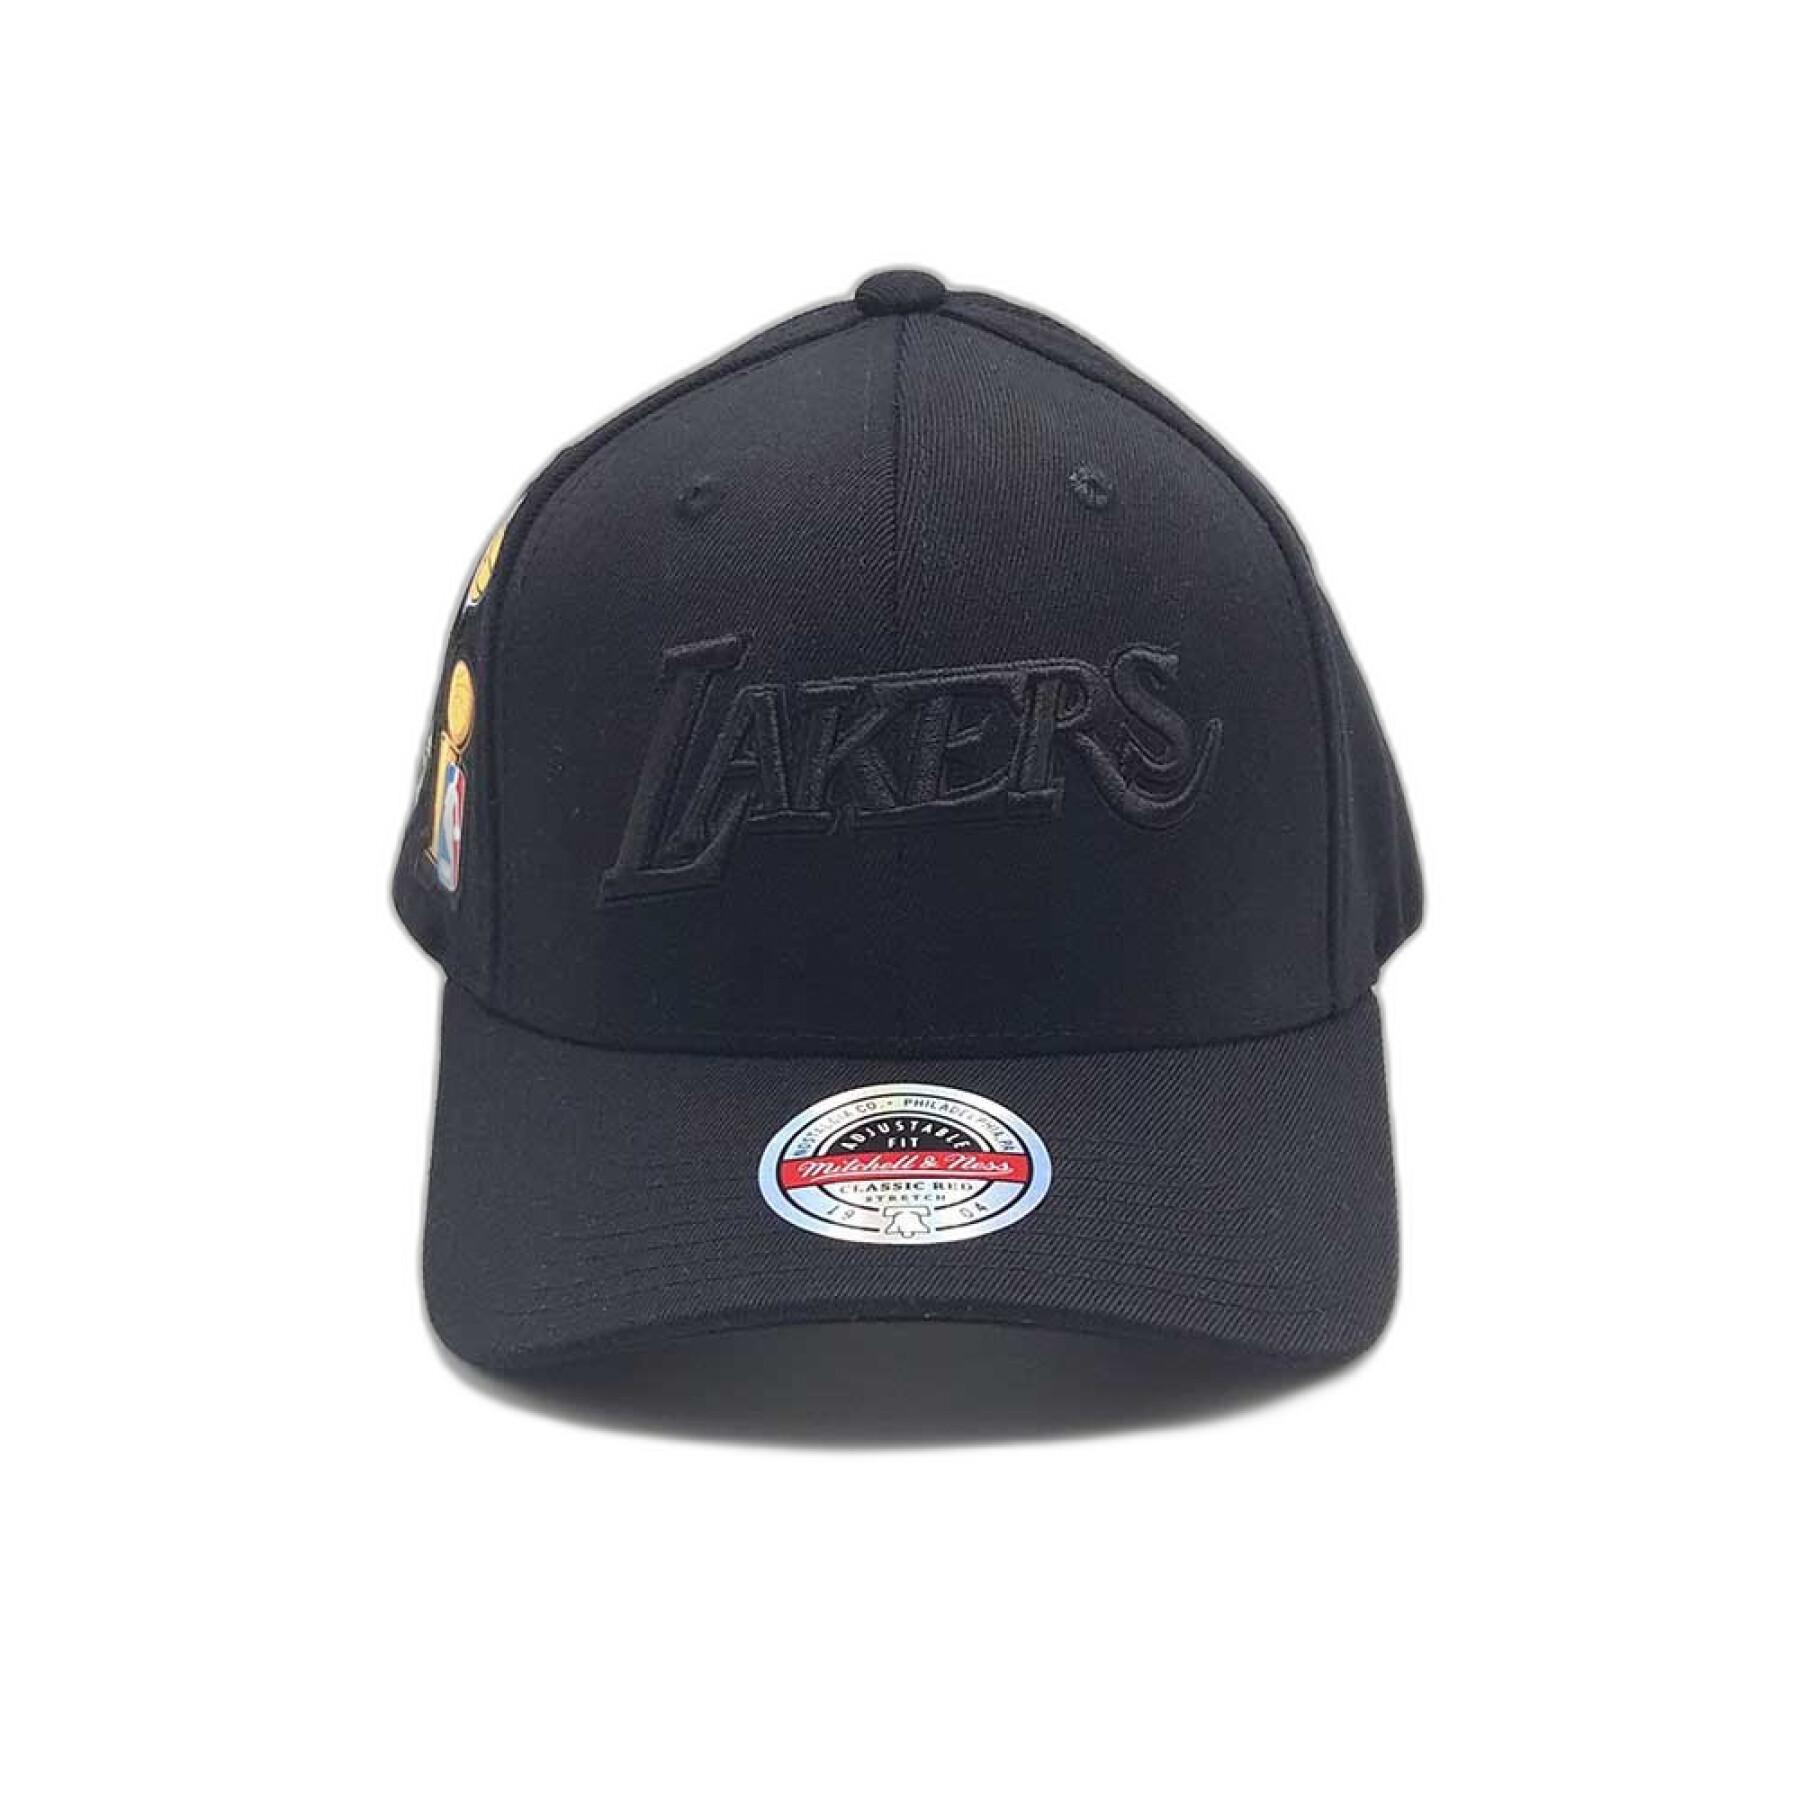 Gorra de los Lakers